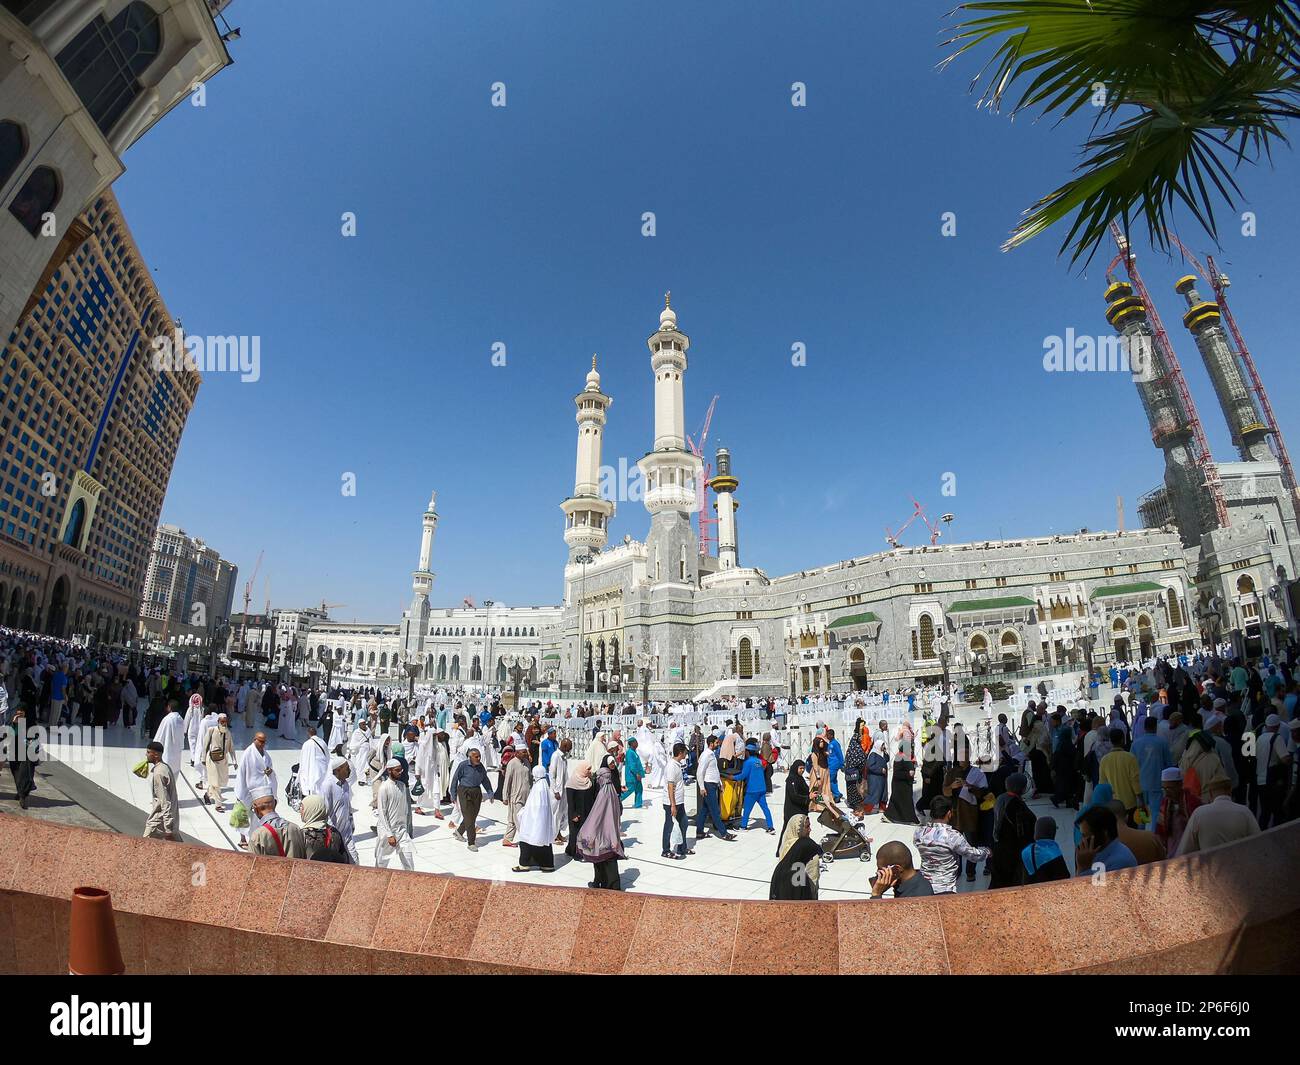 Masjid Al Haram, également connu sous le nom de Grande Mosquée de la Mecque, est une mosquée qui entoure la Kaaba à la Mecque, dans la province de la Mecque en Arabie Saoudite. Banque D'Images